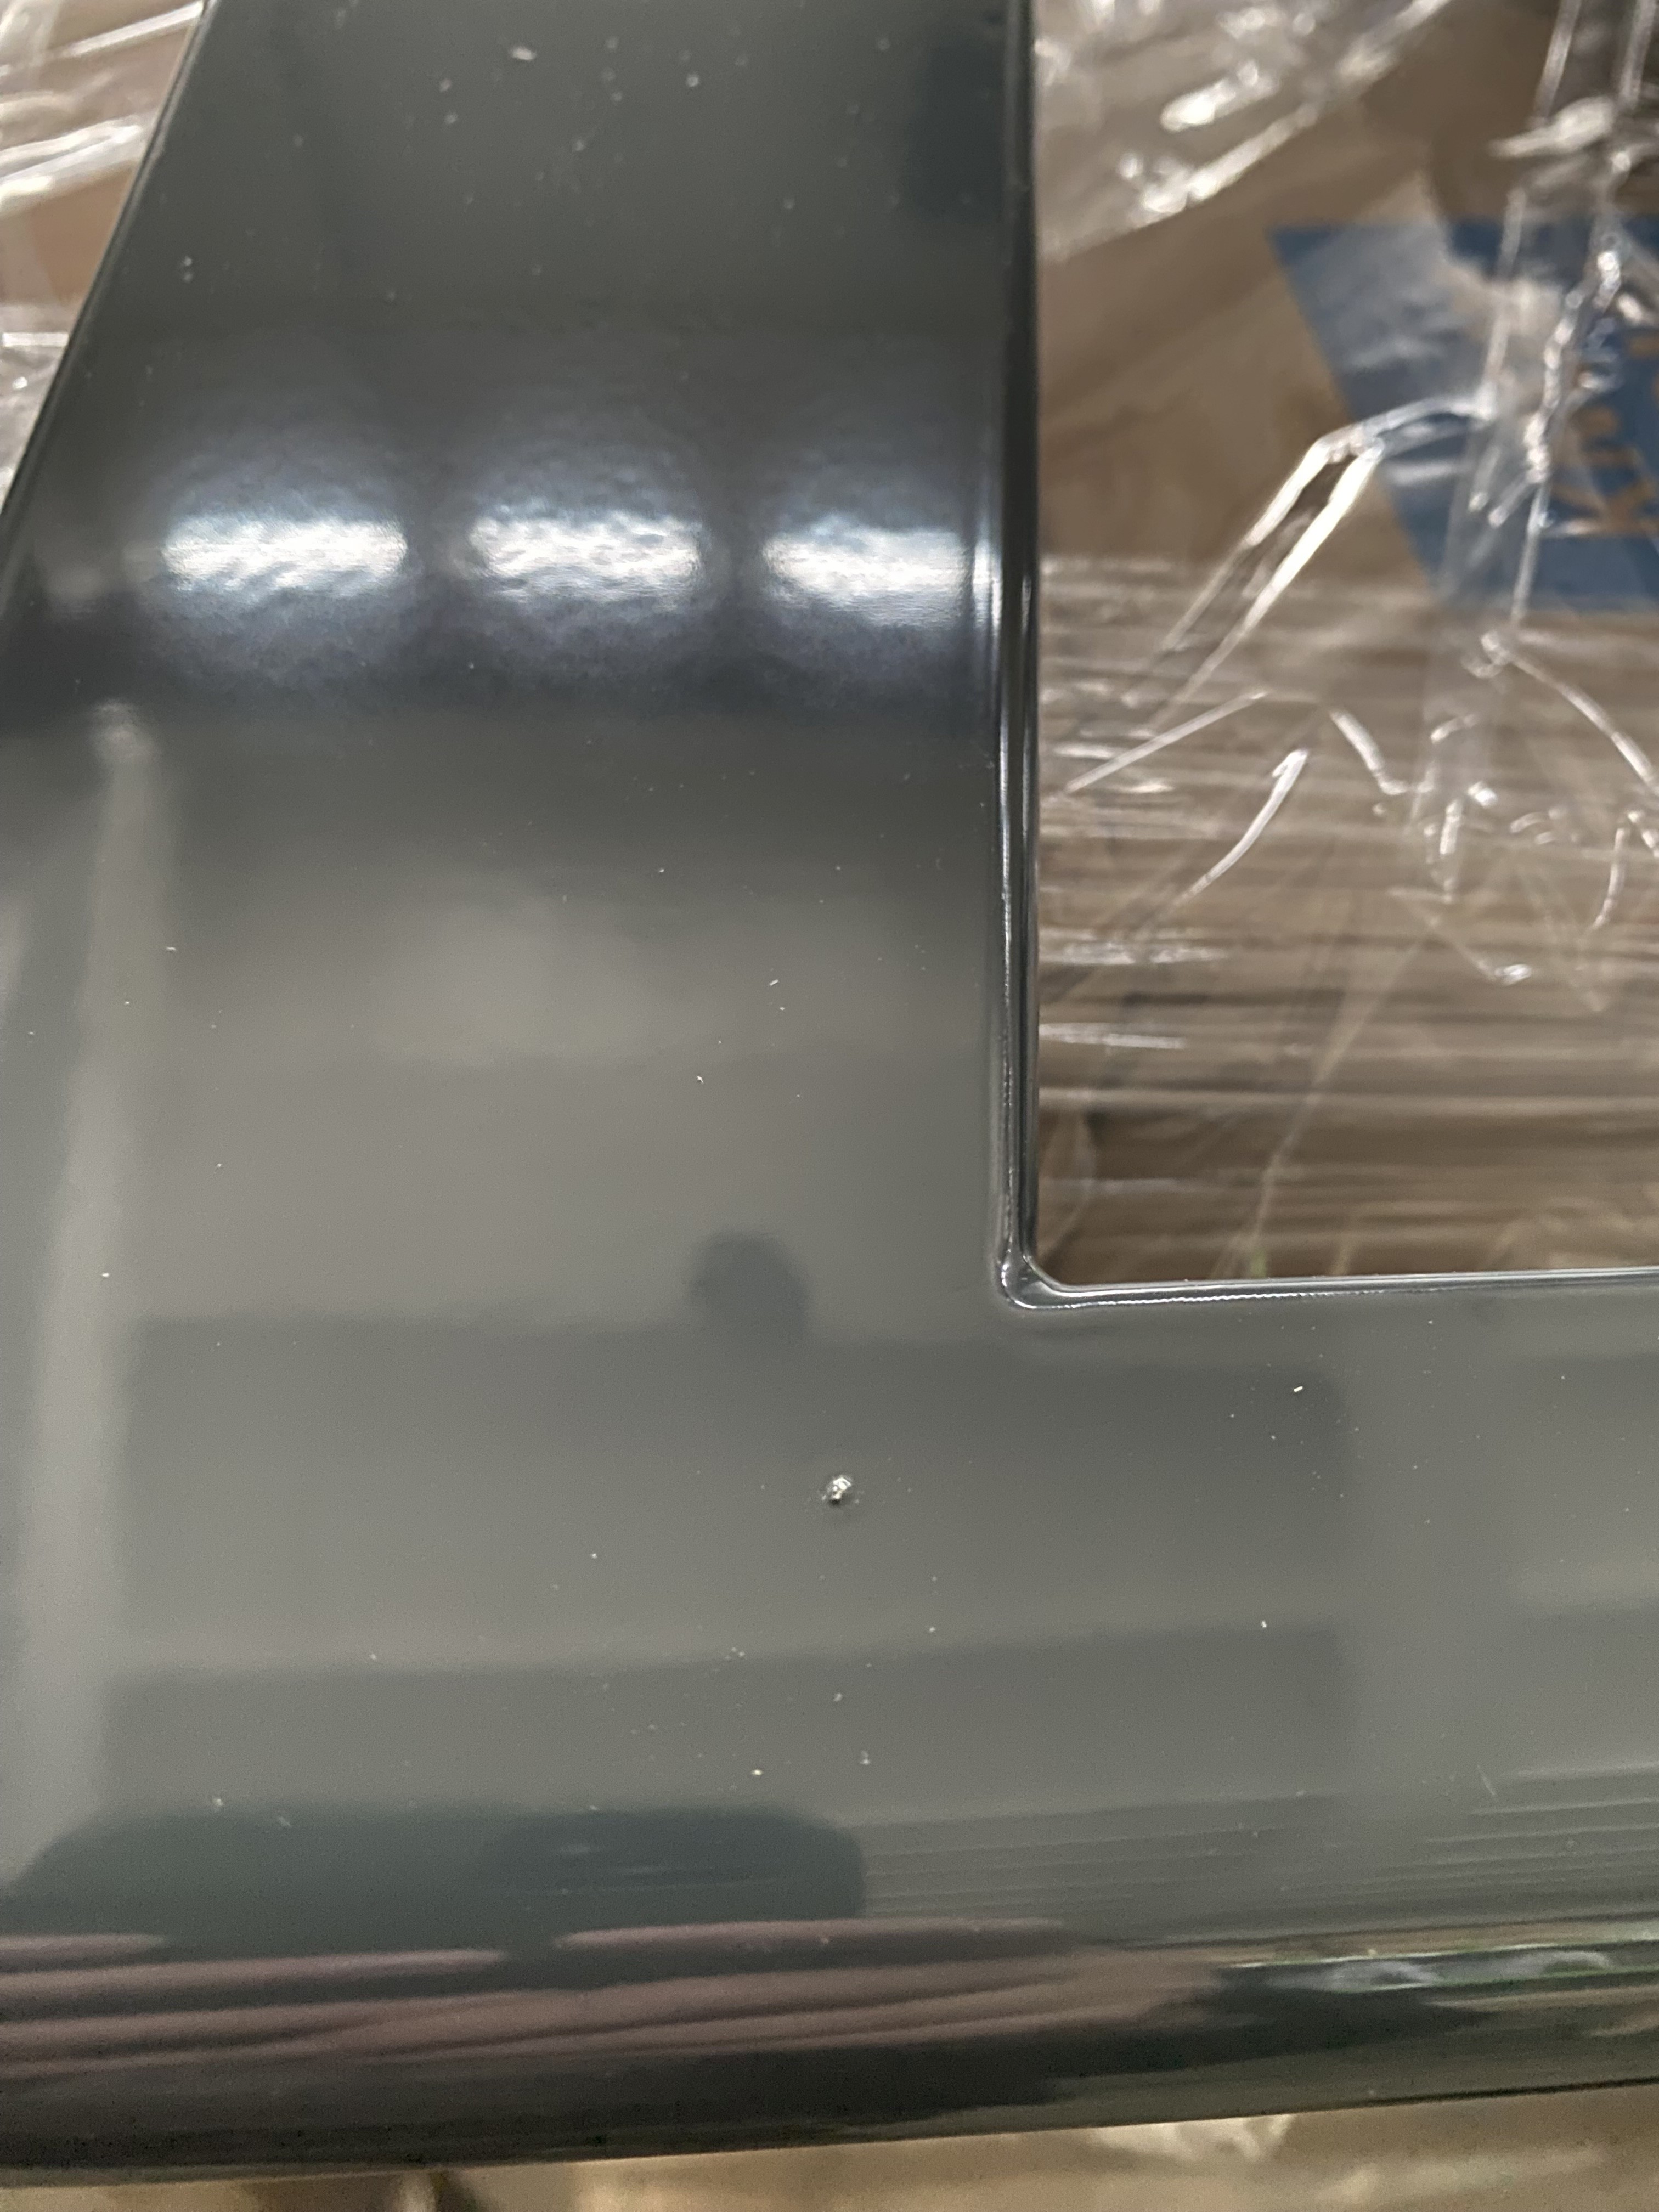 Zehnder Design-Heizkörper „Ribbon“ 50 × 126,6 cm in Anthracite Grey, B-Ware